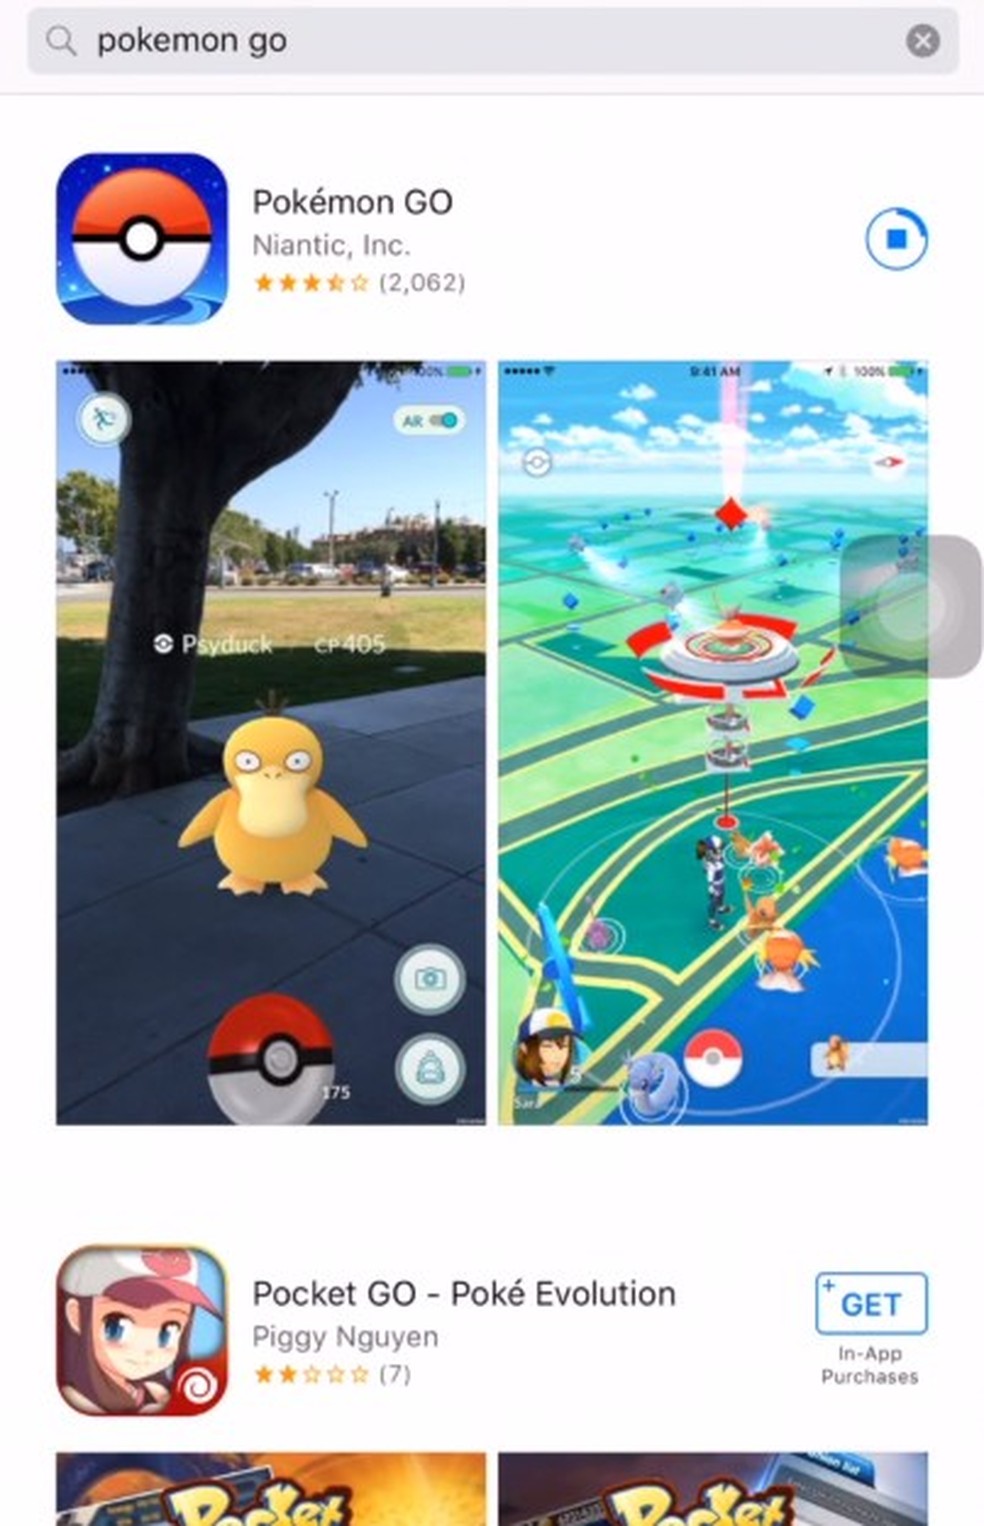 Pokémon ganha jogo grátis de celular voltado para crianças - 21/09/2017 -  UOL Start